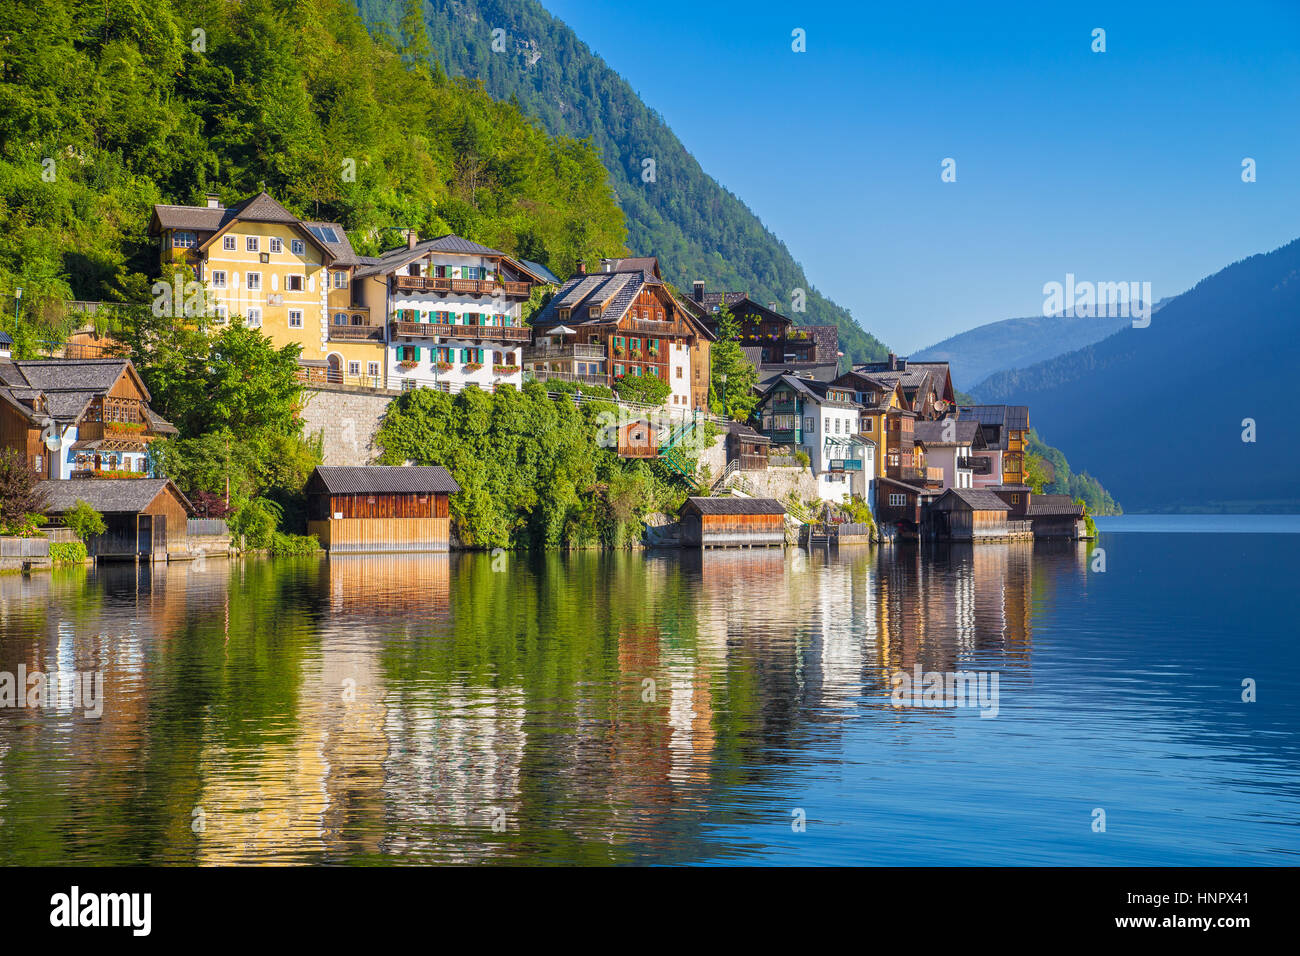 Malerische Postkartenblick auf traditionelle alte Holzhäuser in der Stadt der berühmten Hallstätter See Traun See in den Alpen im Sommer, Österreich Stockfoto